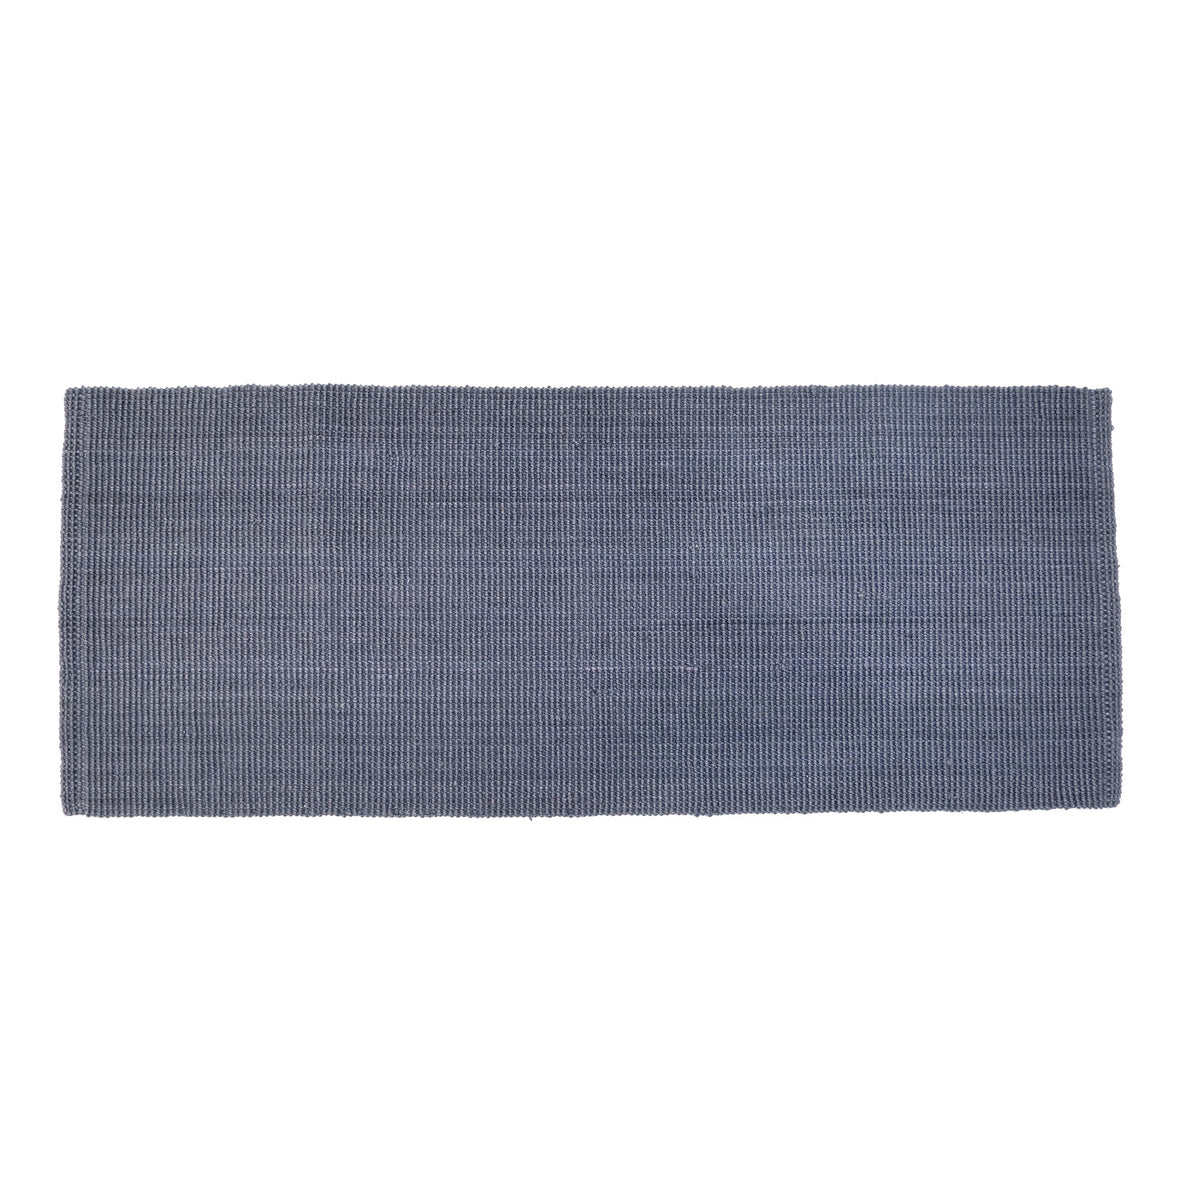 OnlyMat Dark Grey Jute Runner Rug / Eco-Friendly Handwoven Carpet for Bedside / Living Room Decor